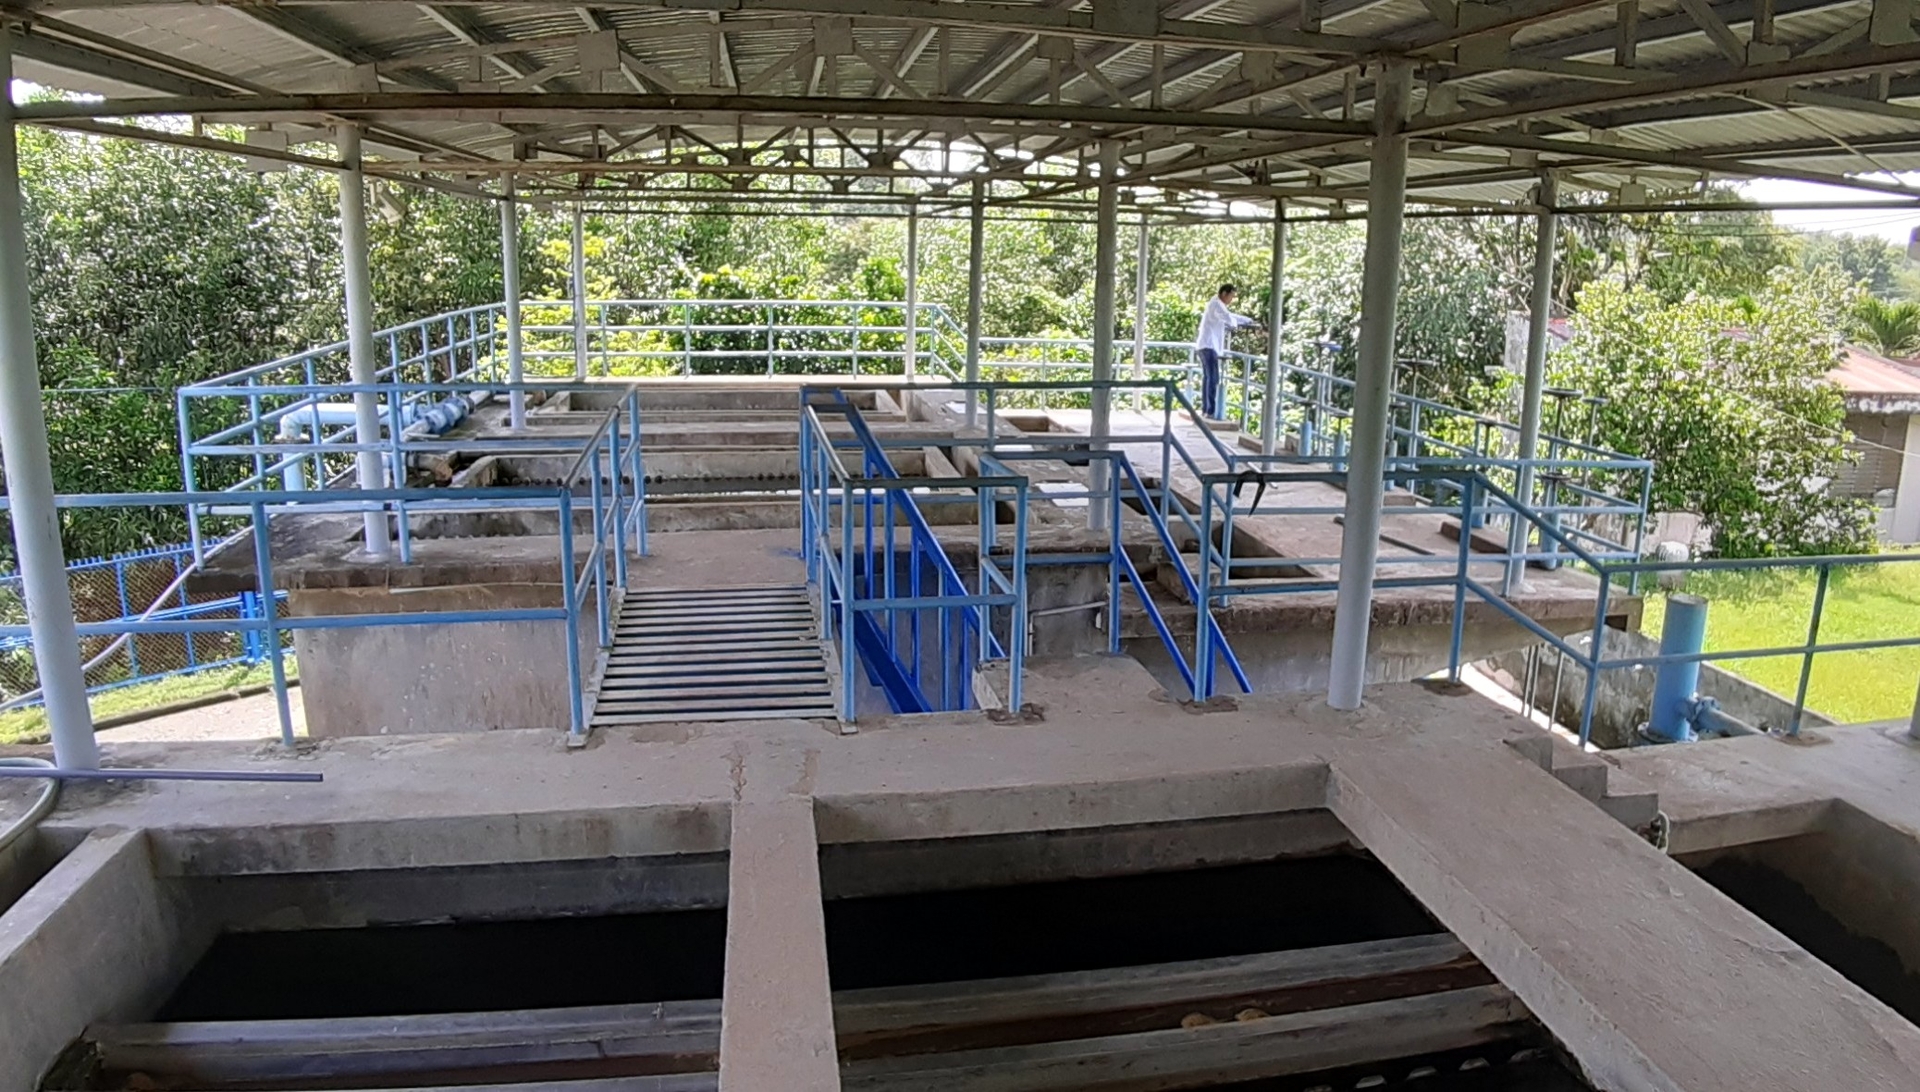 Trung tâm Nước sạch và Vệ sinh môi trường nông thôn Bình Thuận đang nỗ lực cấp nước sạch cho vùng nông thôn miền núi. Ảnh: KS.